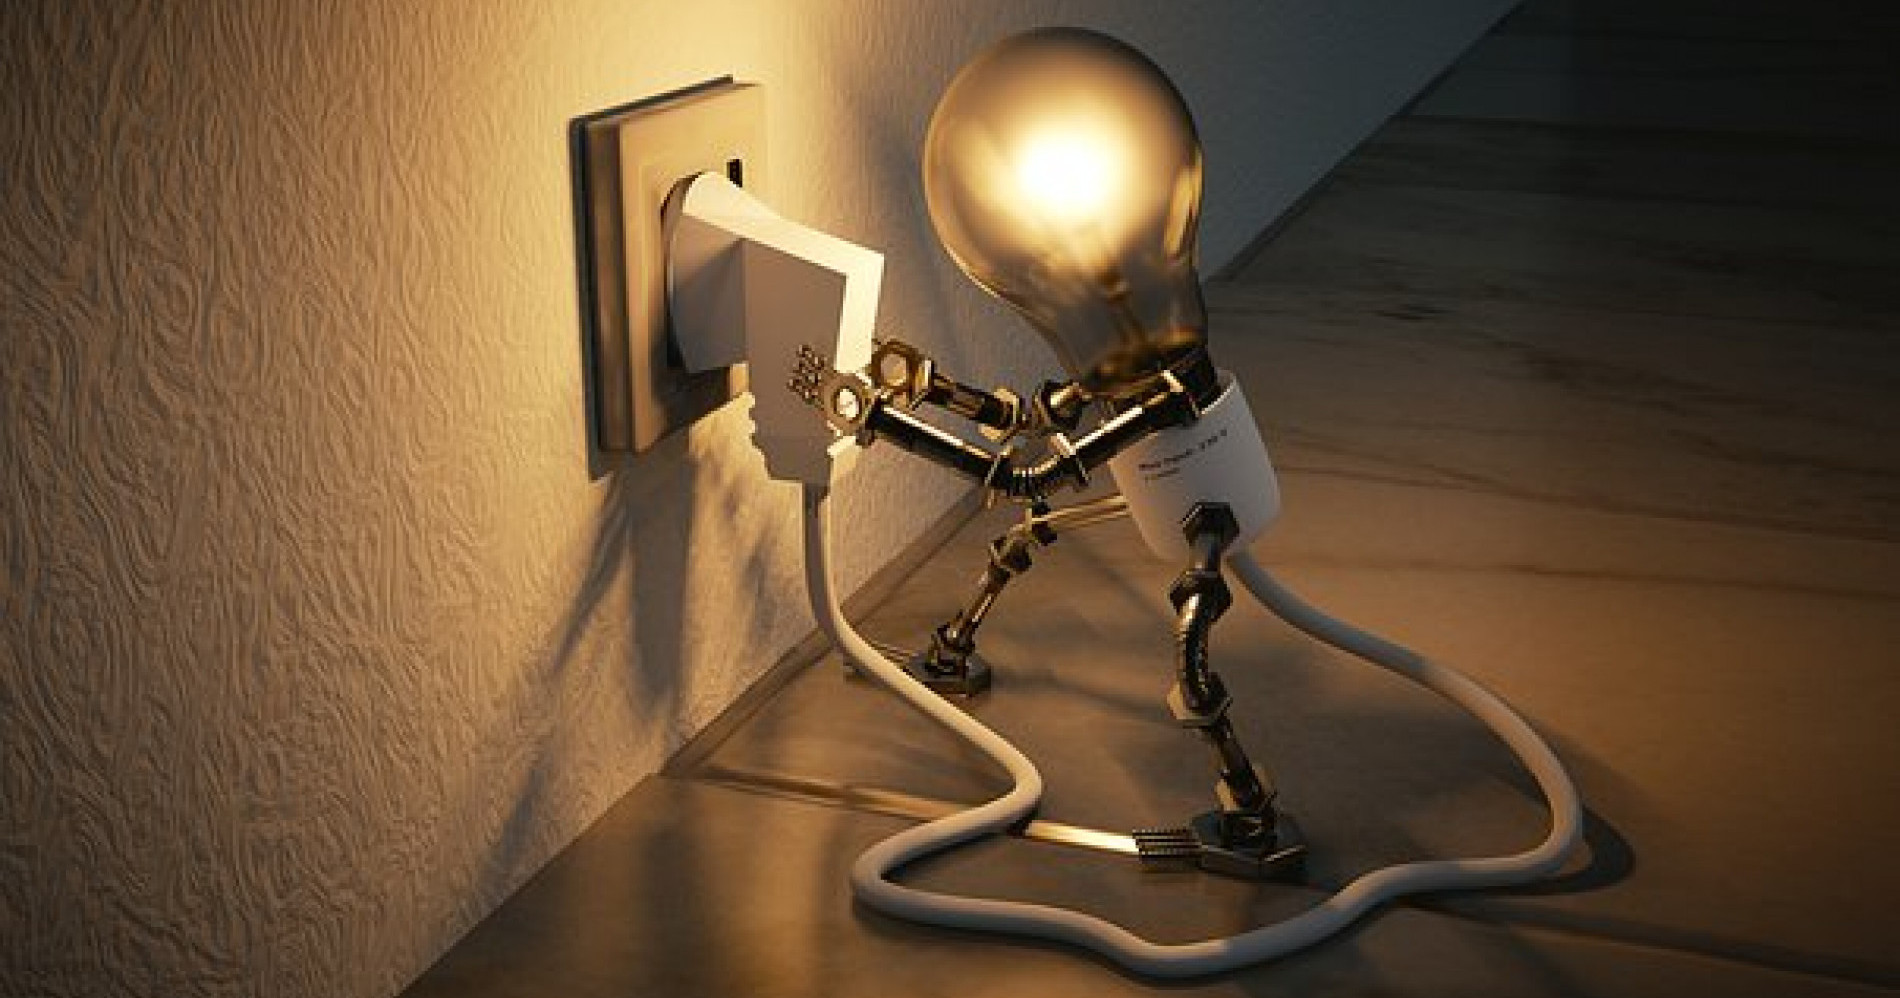 Mematikan lampu saat tak digunakan bisa menghemat pengeluaran bulanan (Sumber gambar: https://cdn.pixabay.com/photo/2018/01/24/17/33/light-bulb-3104355__340.jpg)